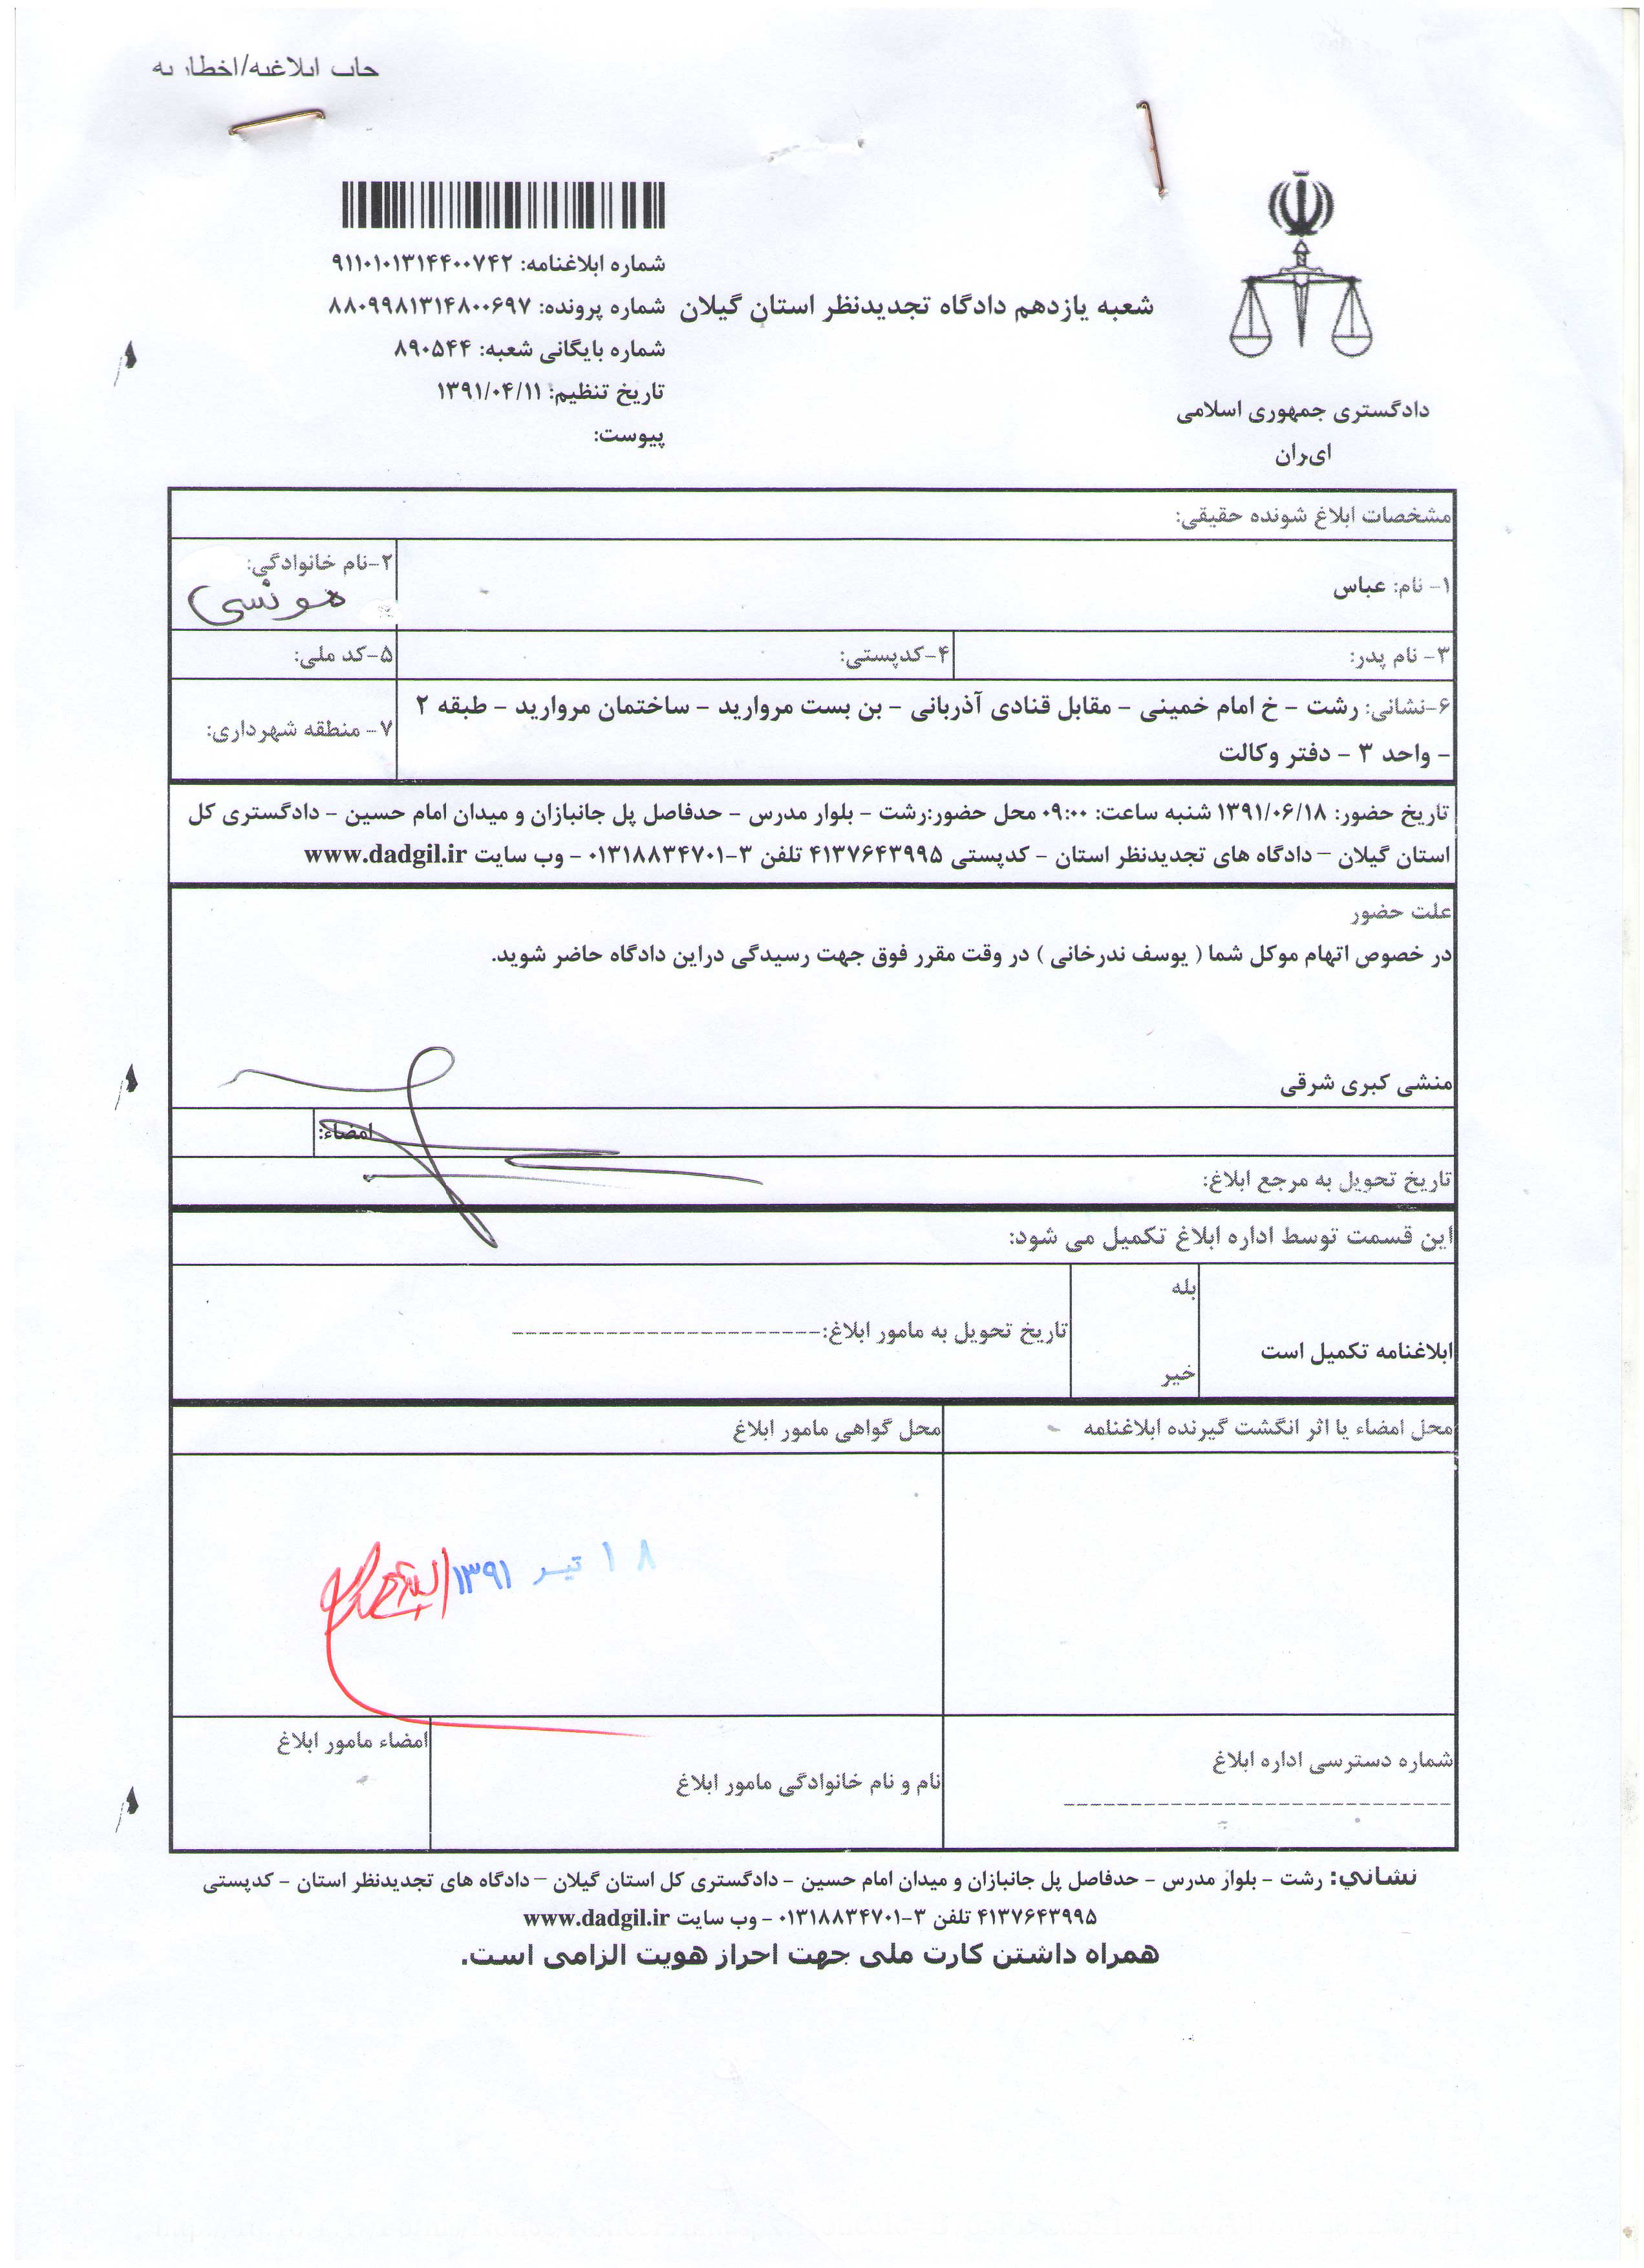 Court summons for Pastor Youcef Nadarkhani.